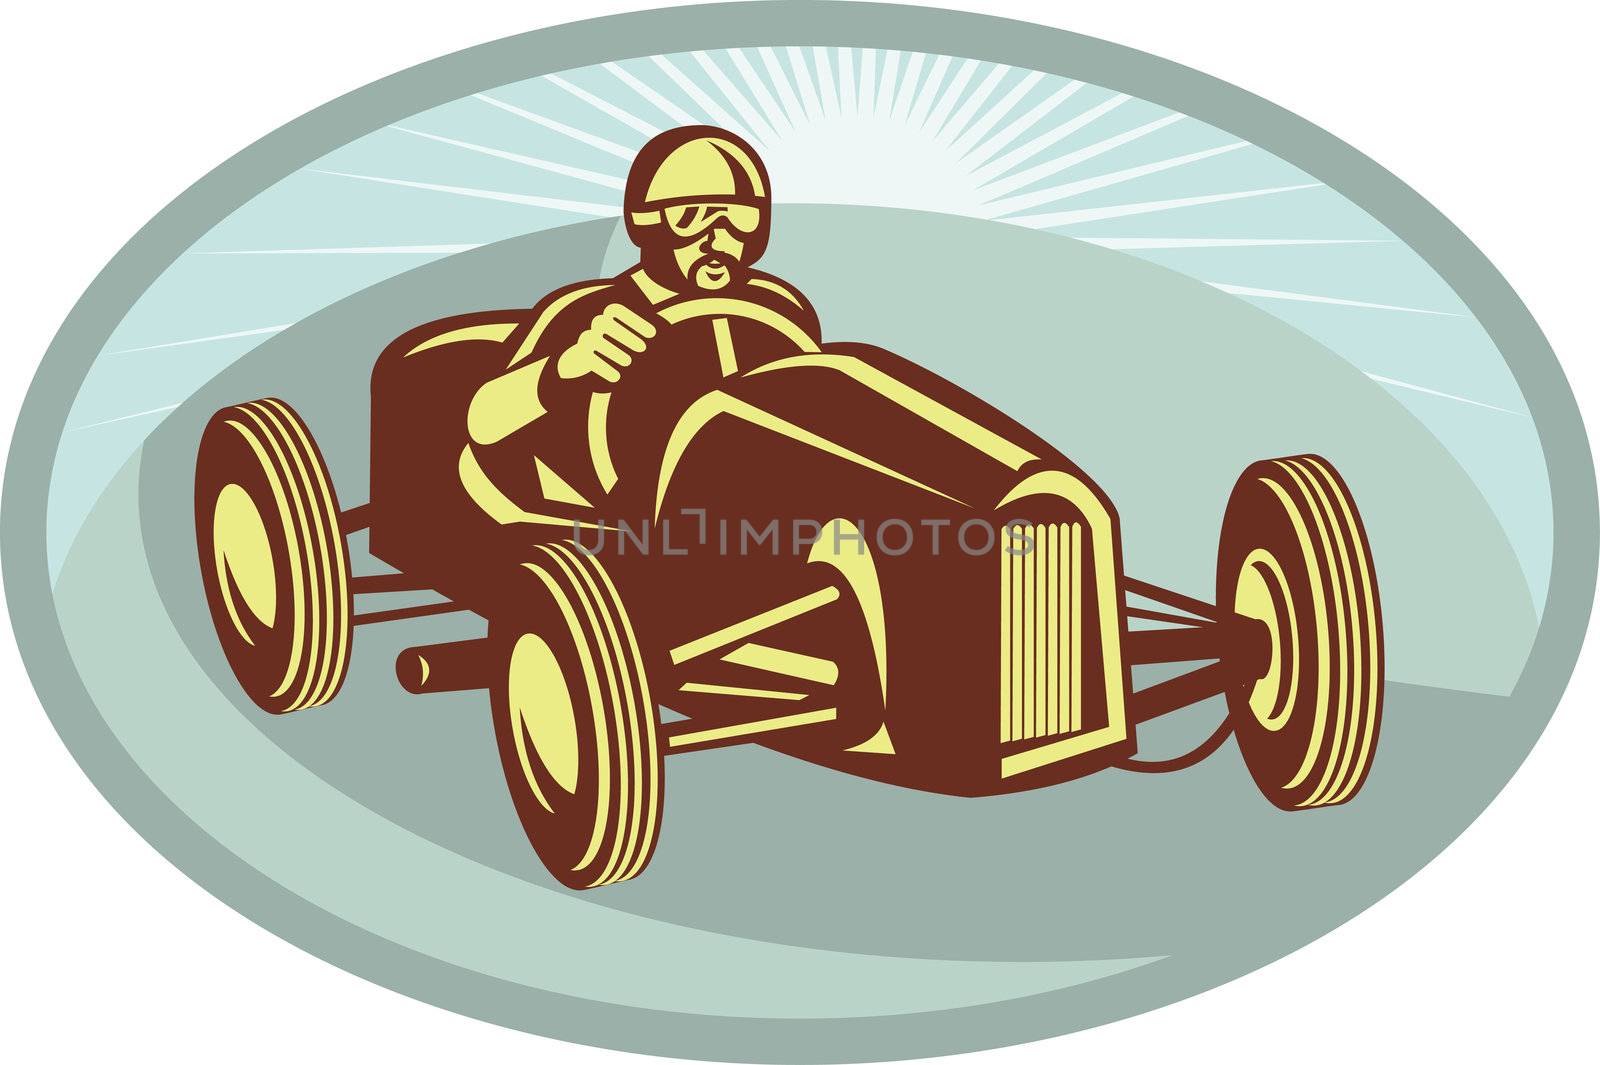 Vintage Race car driver racing with sunburst by patrimonio